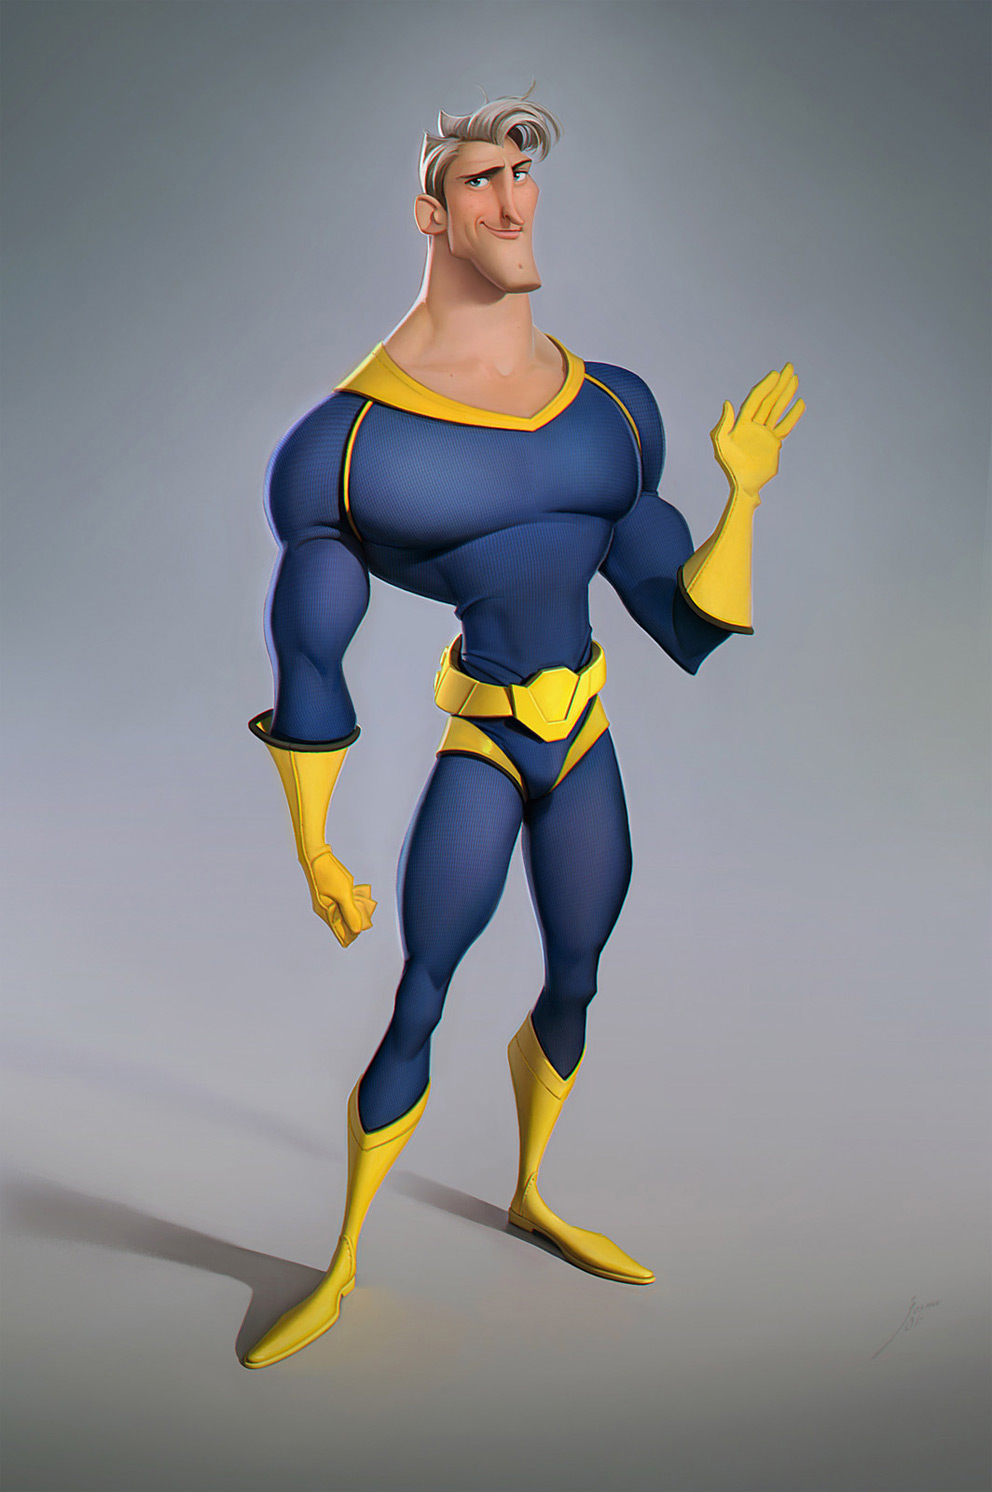 Character Design: Superhero - 2D Digital, Concept art